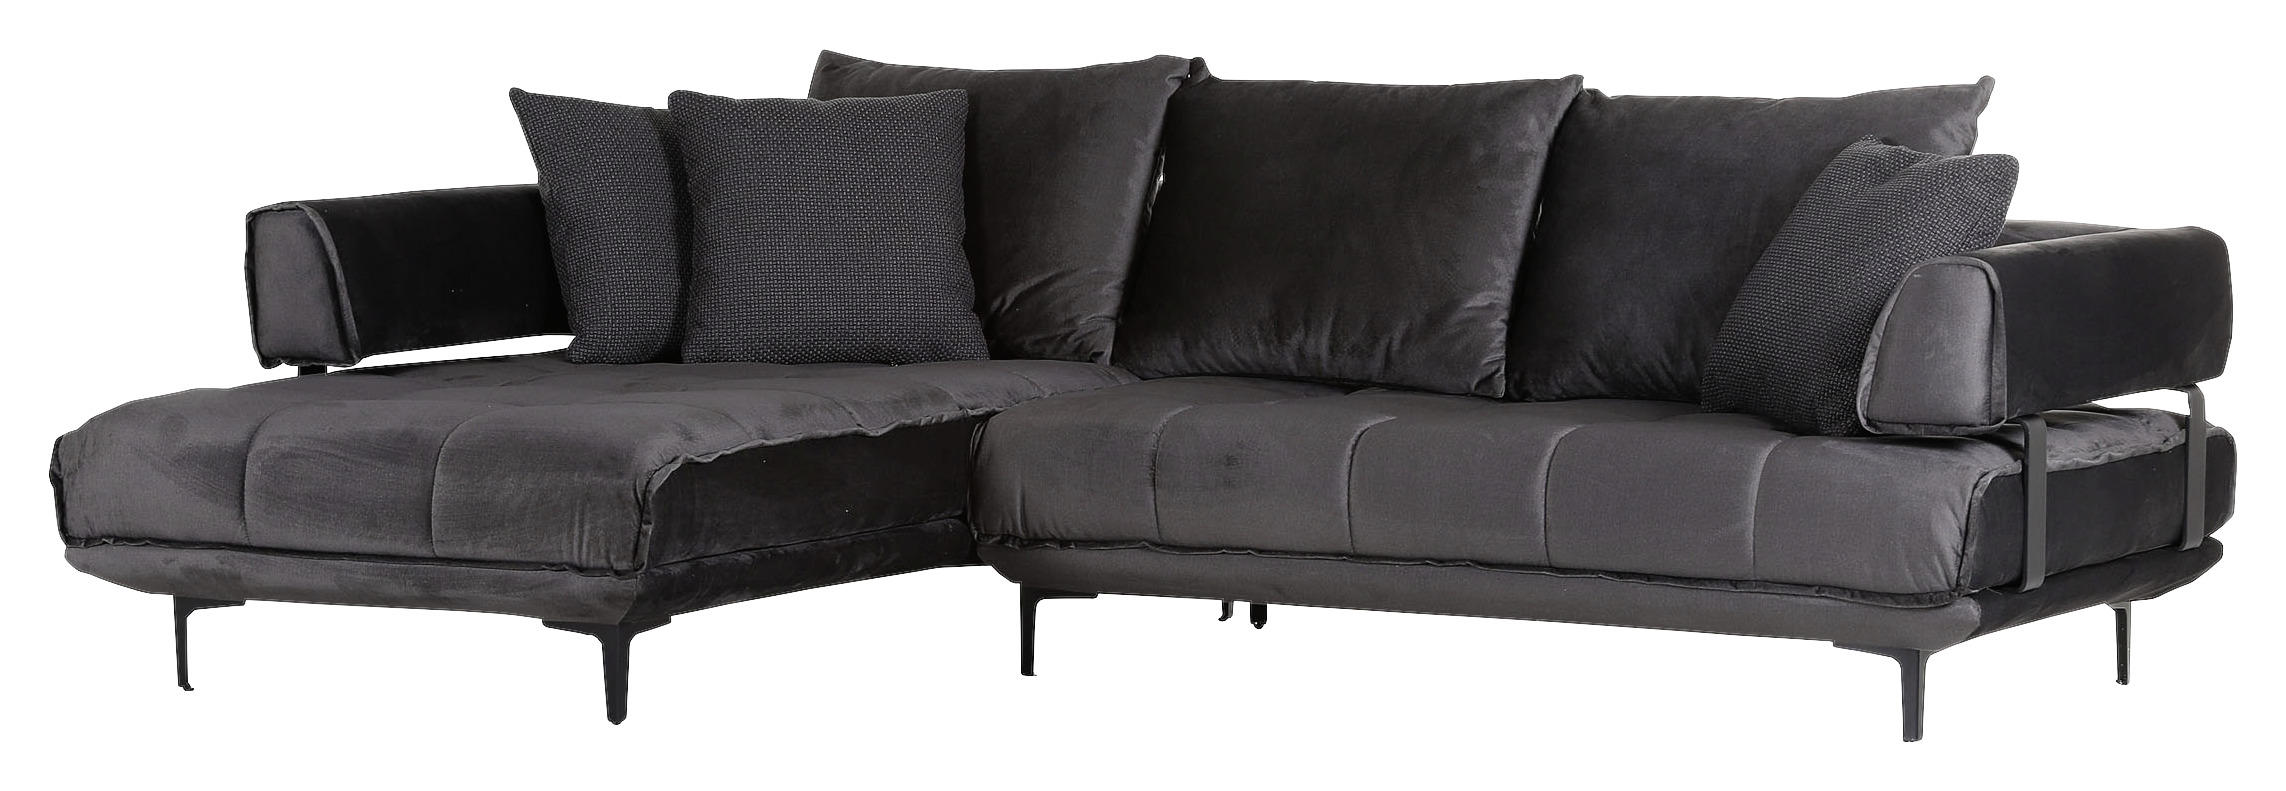 SOFFA i textil mörkgrå  - mörkgrå/svart, Modern, metall/textil (190/265cm)